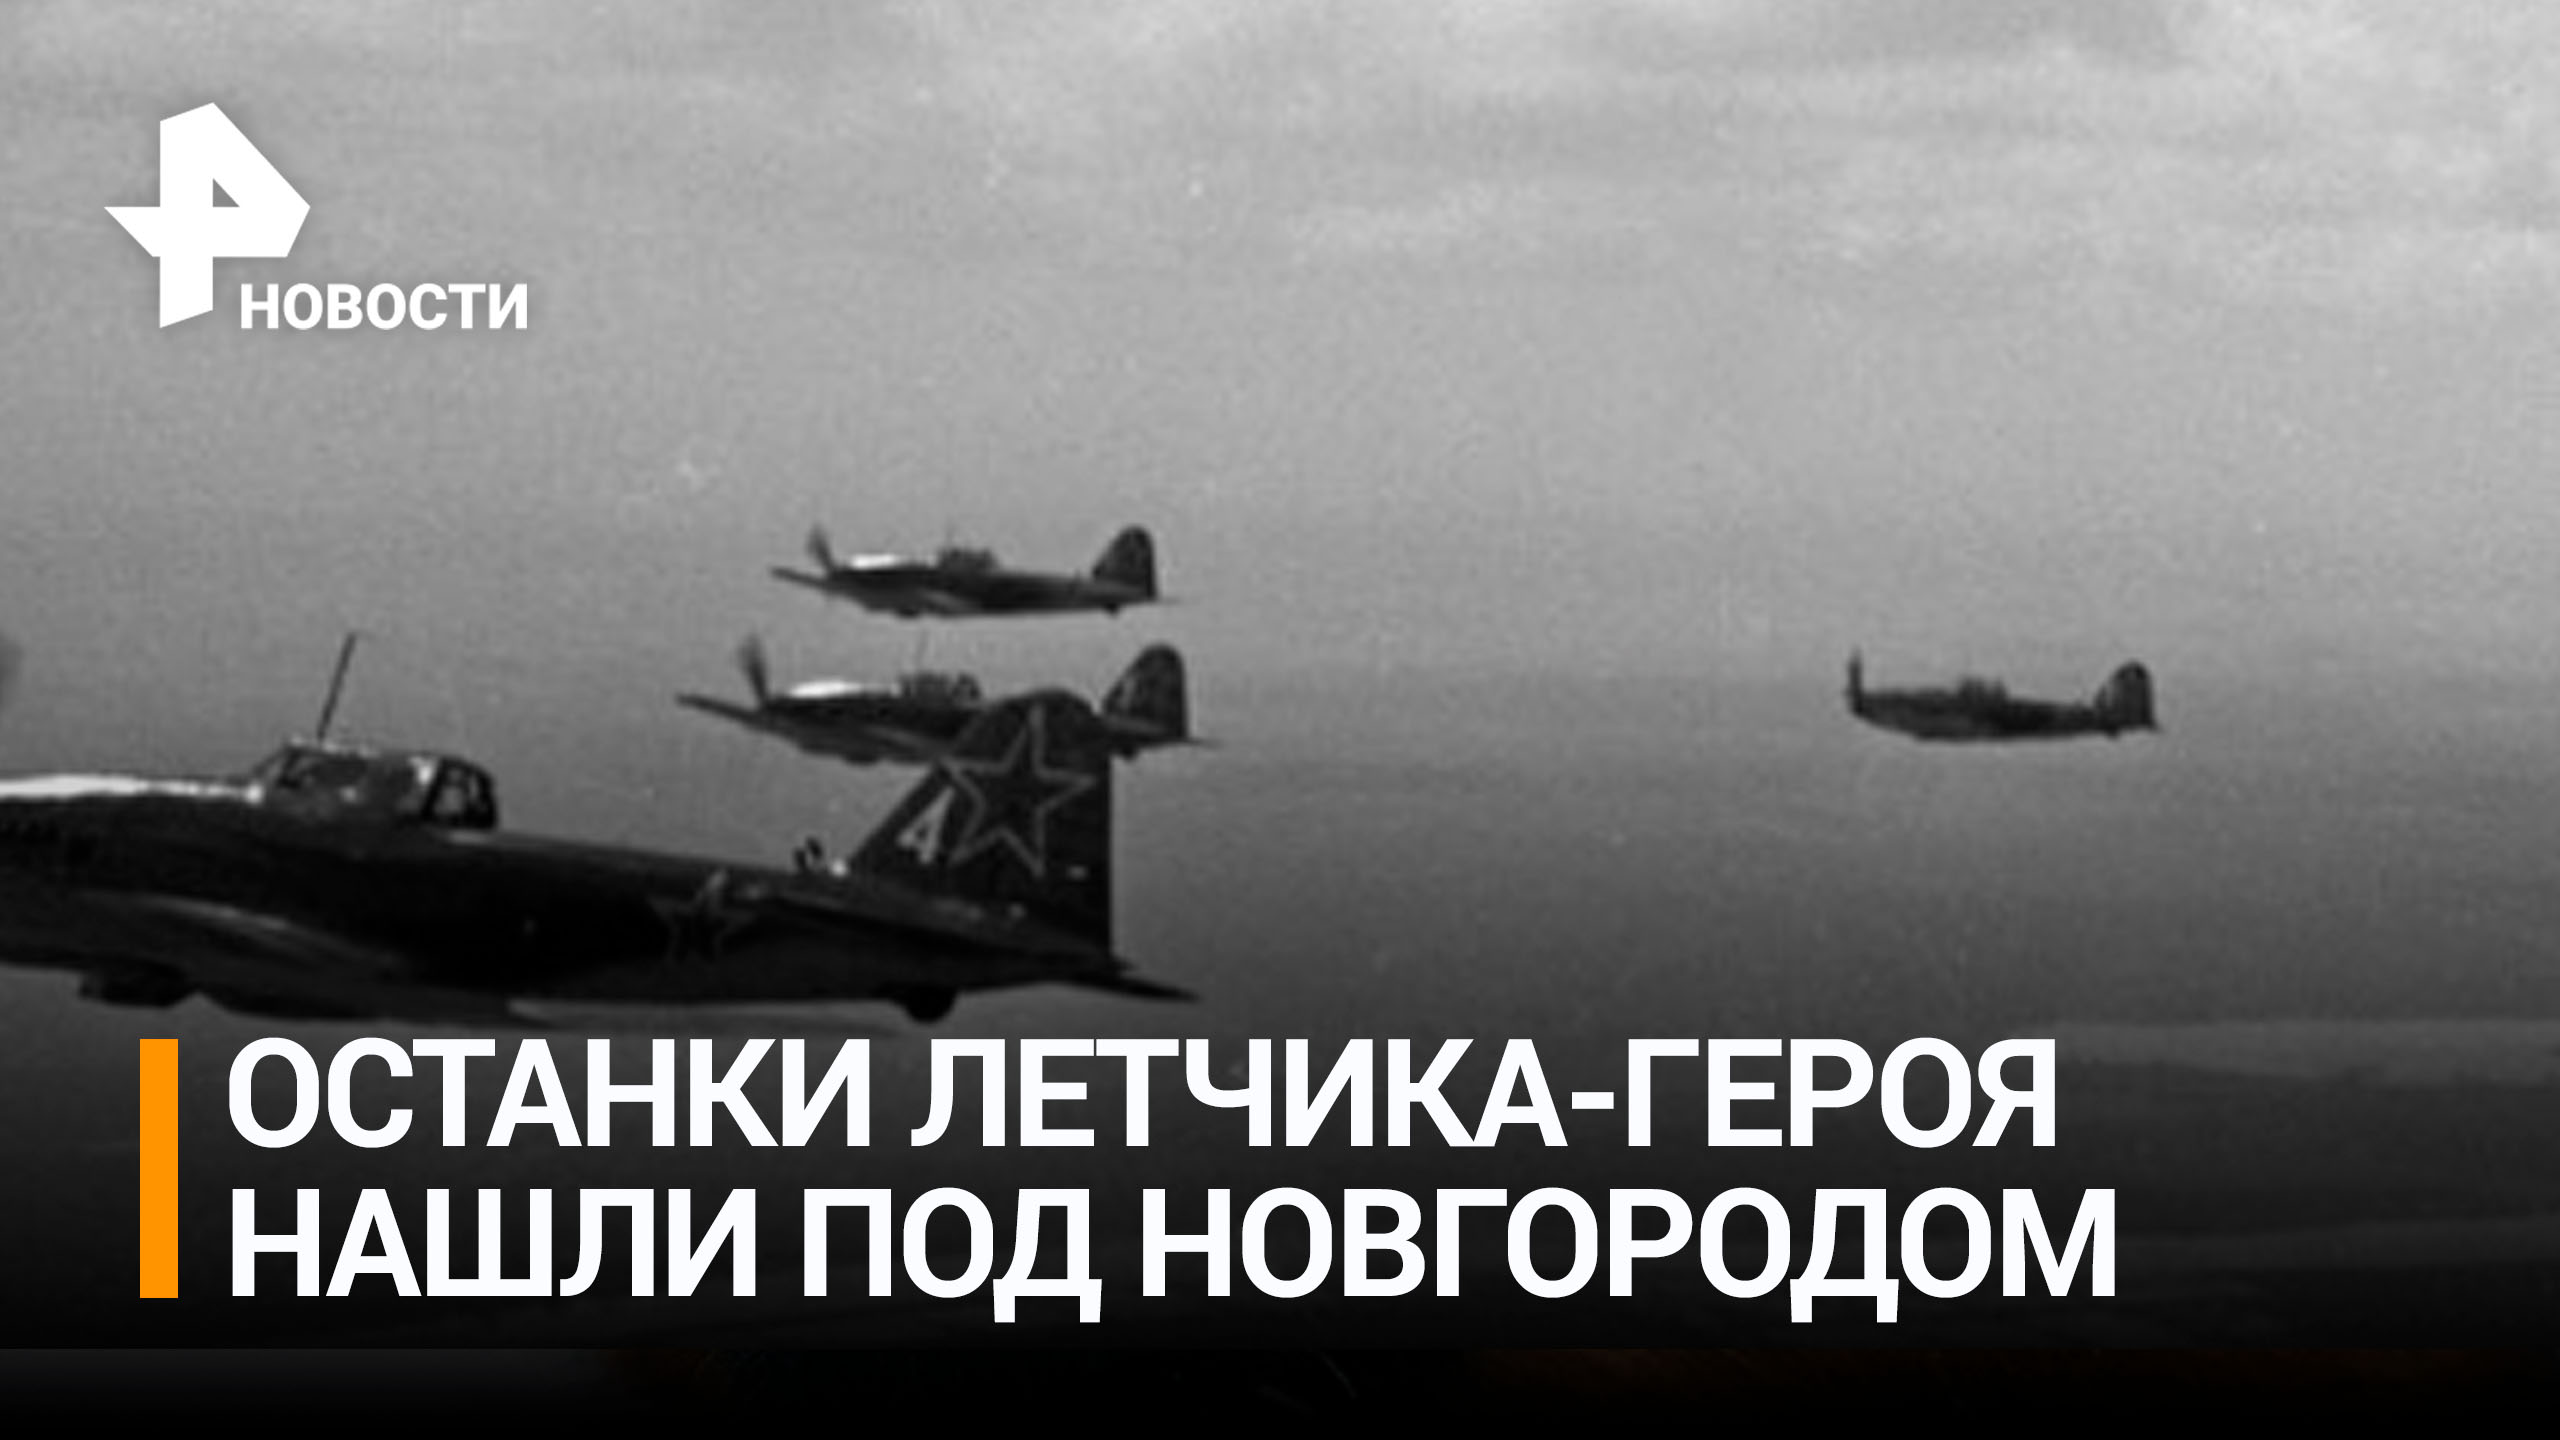 "Он герой": что известно о летчике, чьи останки нашли под Новгородом / РЕН Новости